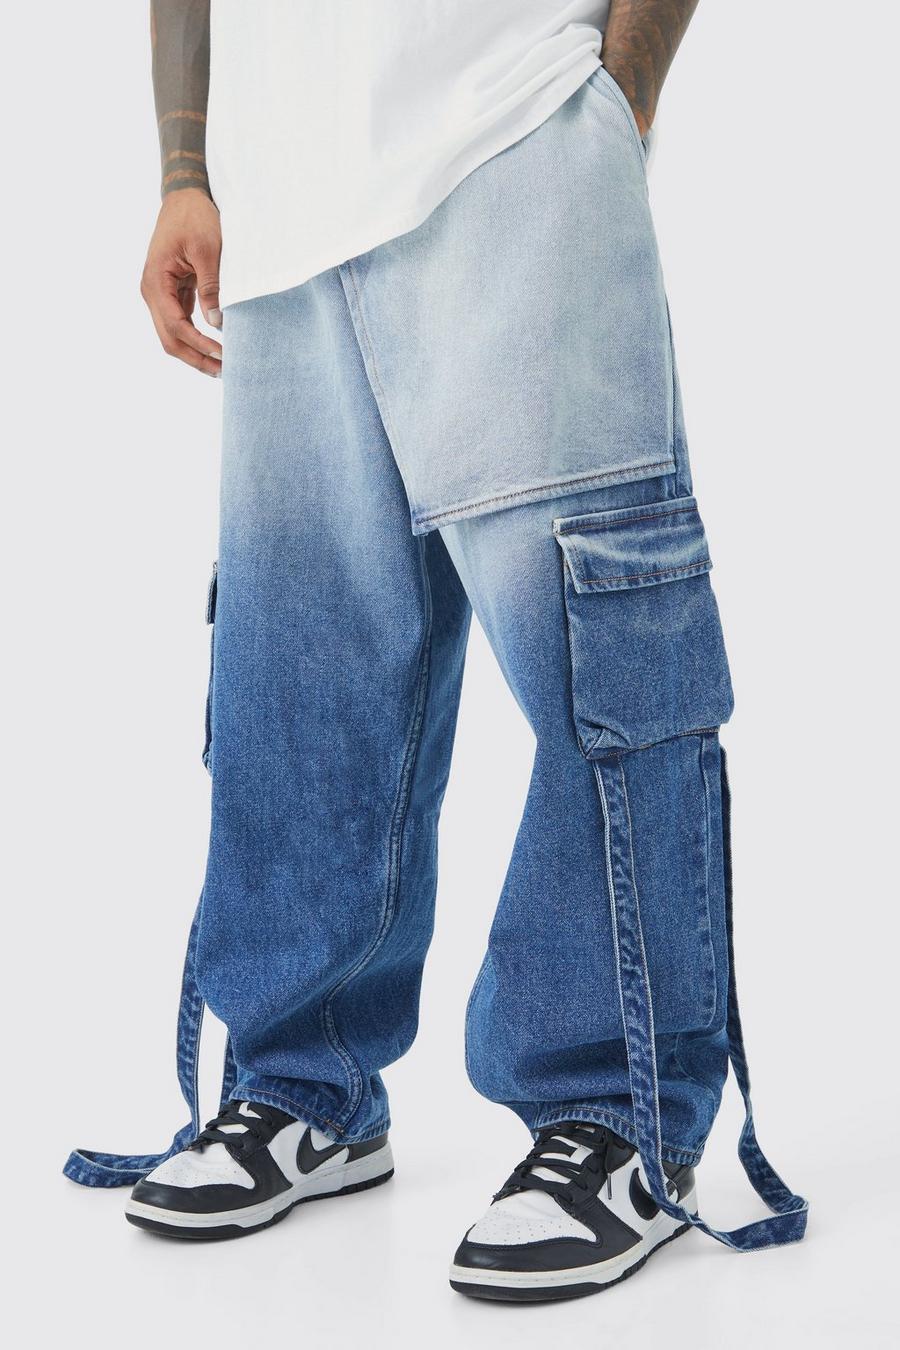 Lockere Jeans mit elastischem Bund und Farbverlauf, Antique wash